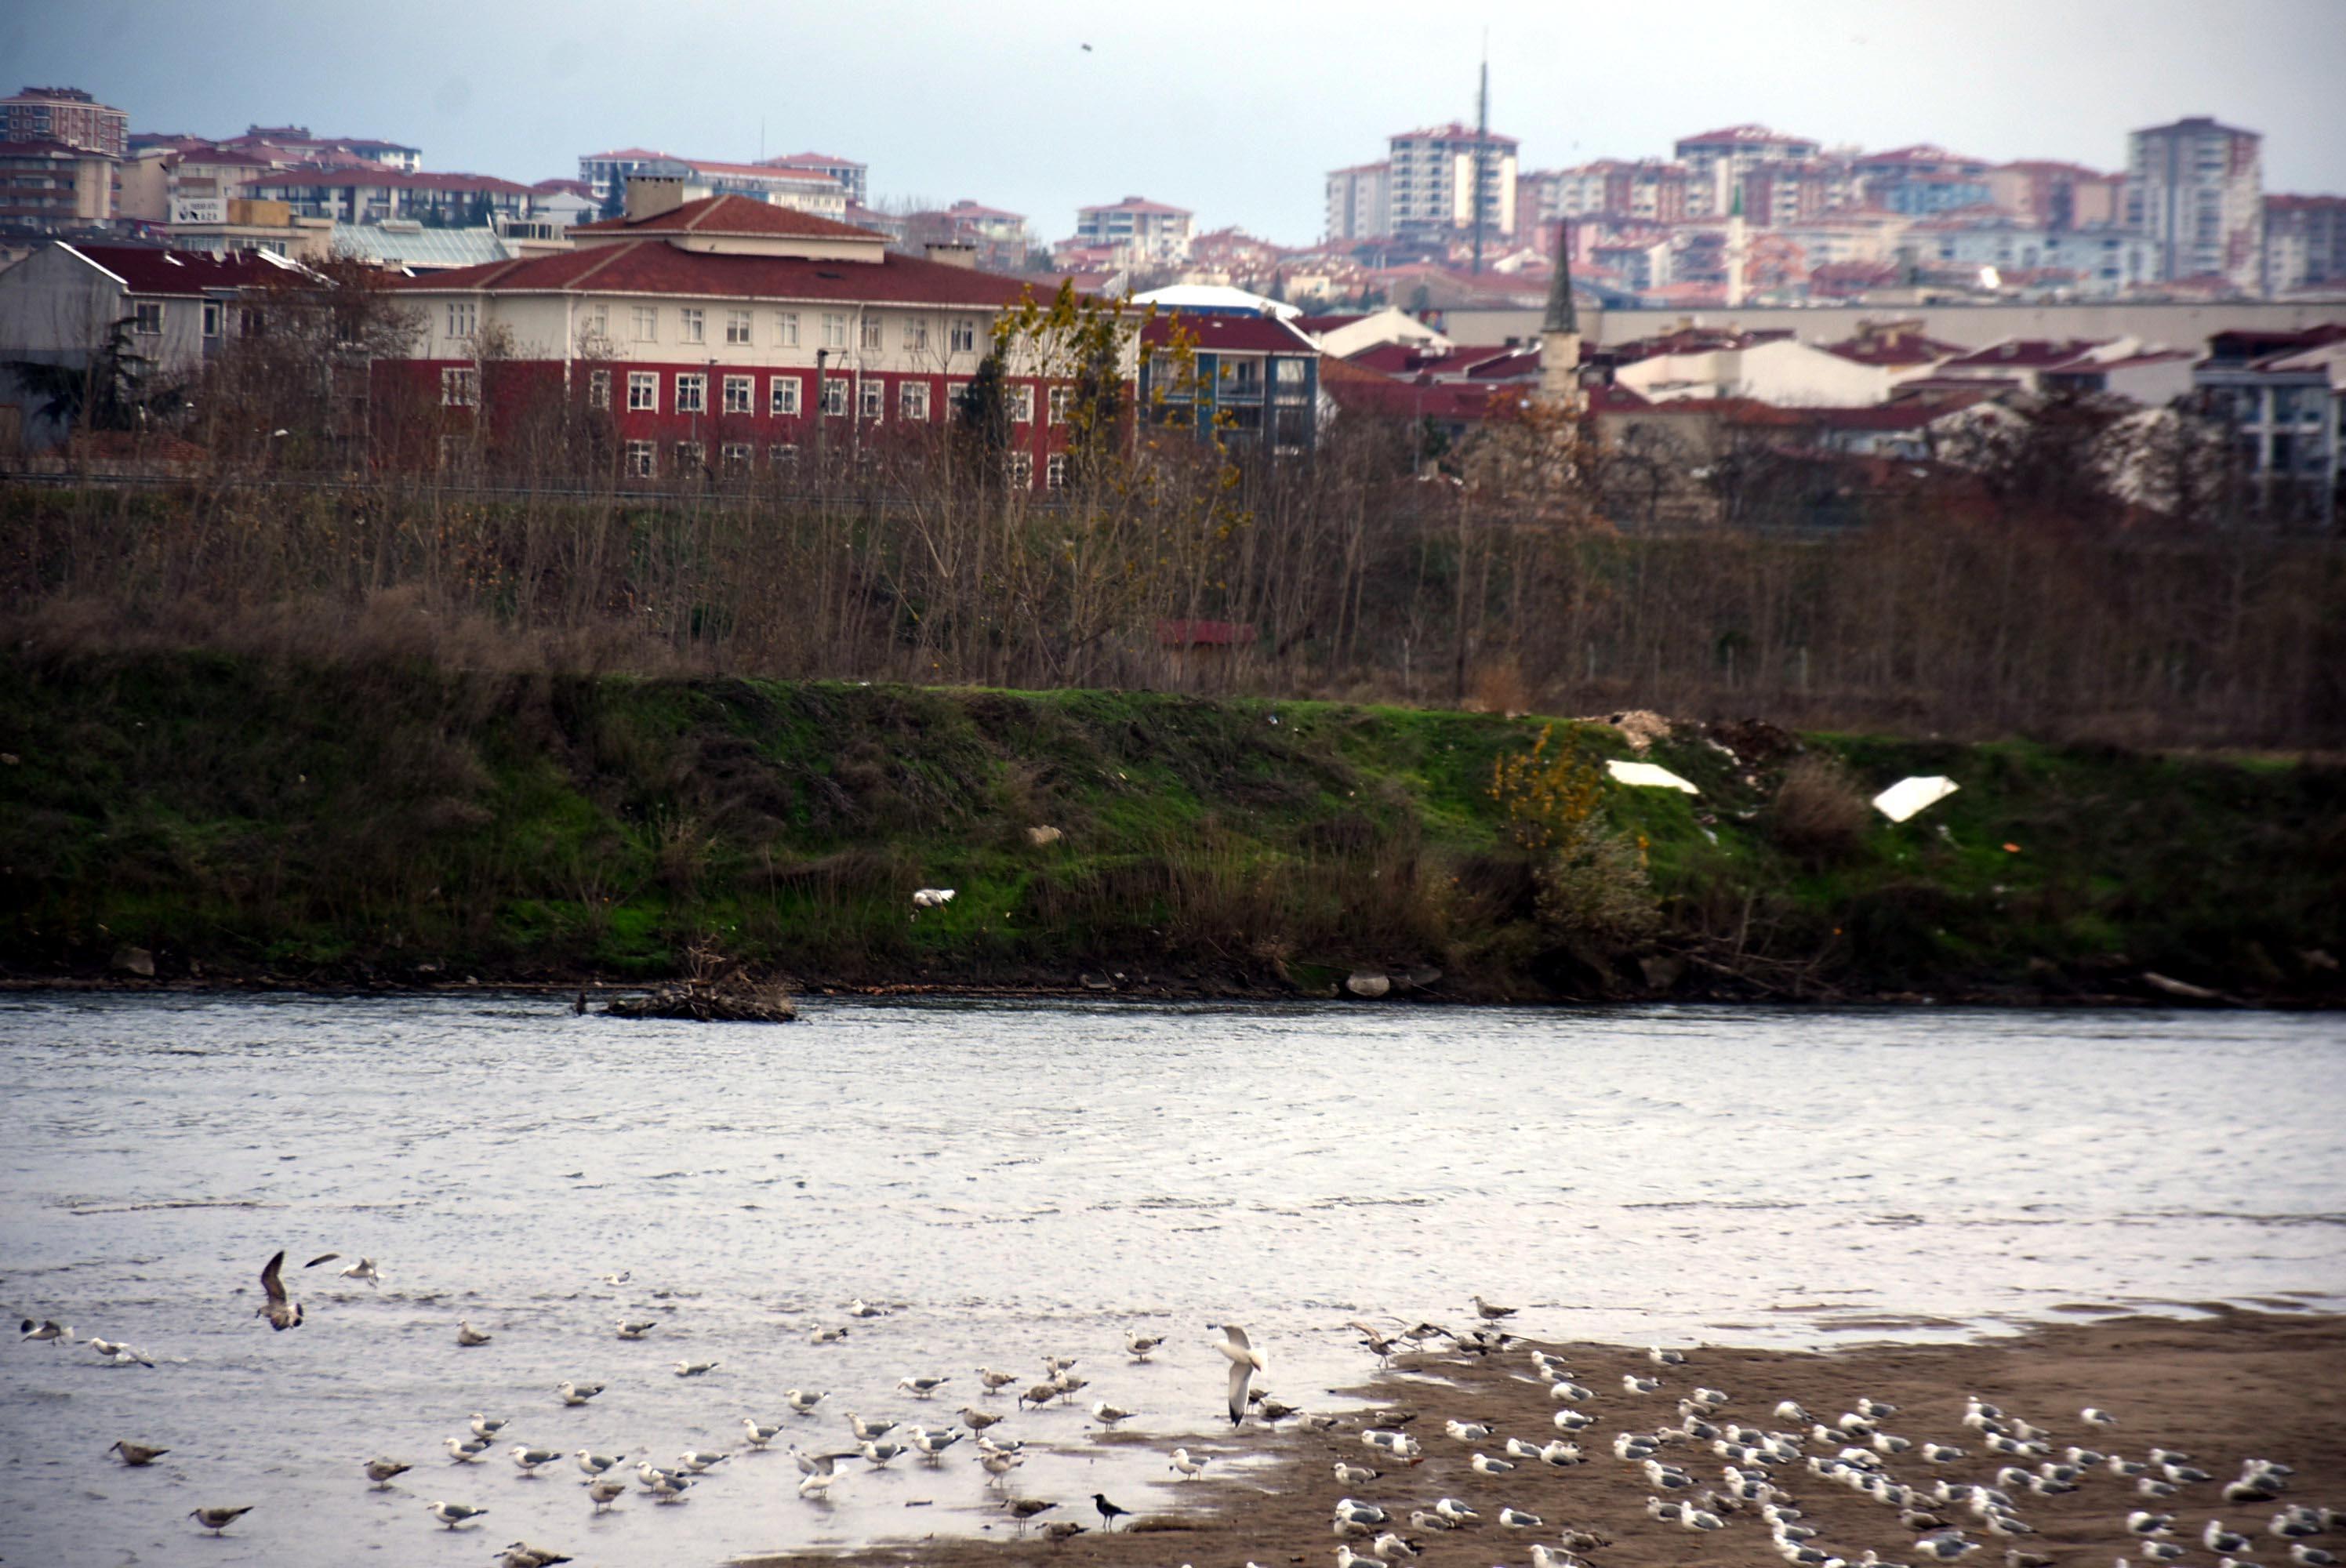 Doç. Dr. Uludağ: Nehir yatağı temizlenerek taşkın önlenemez